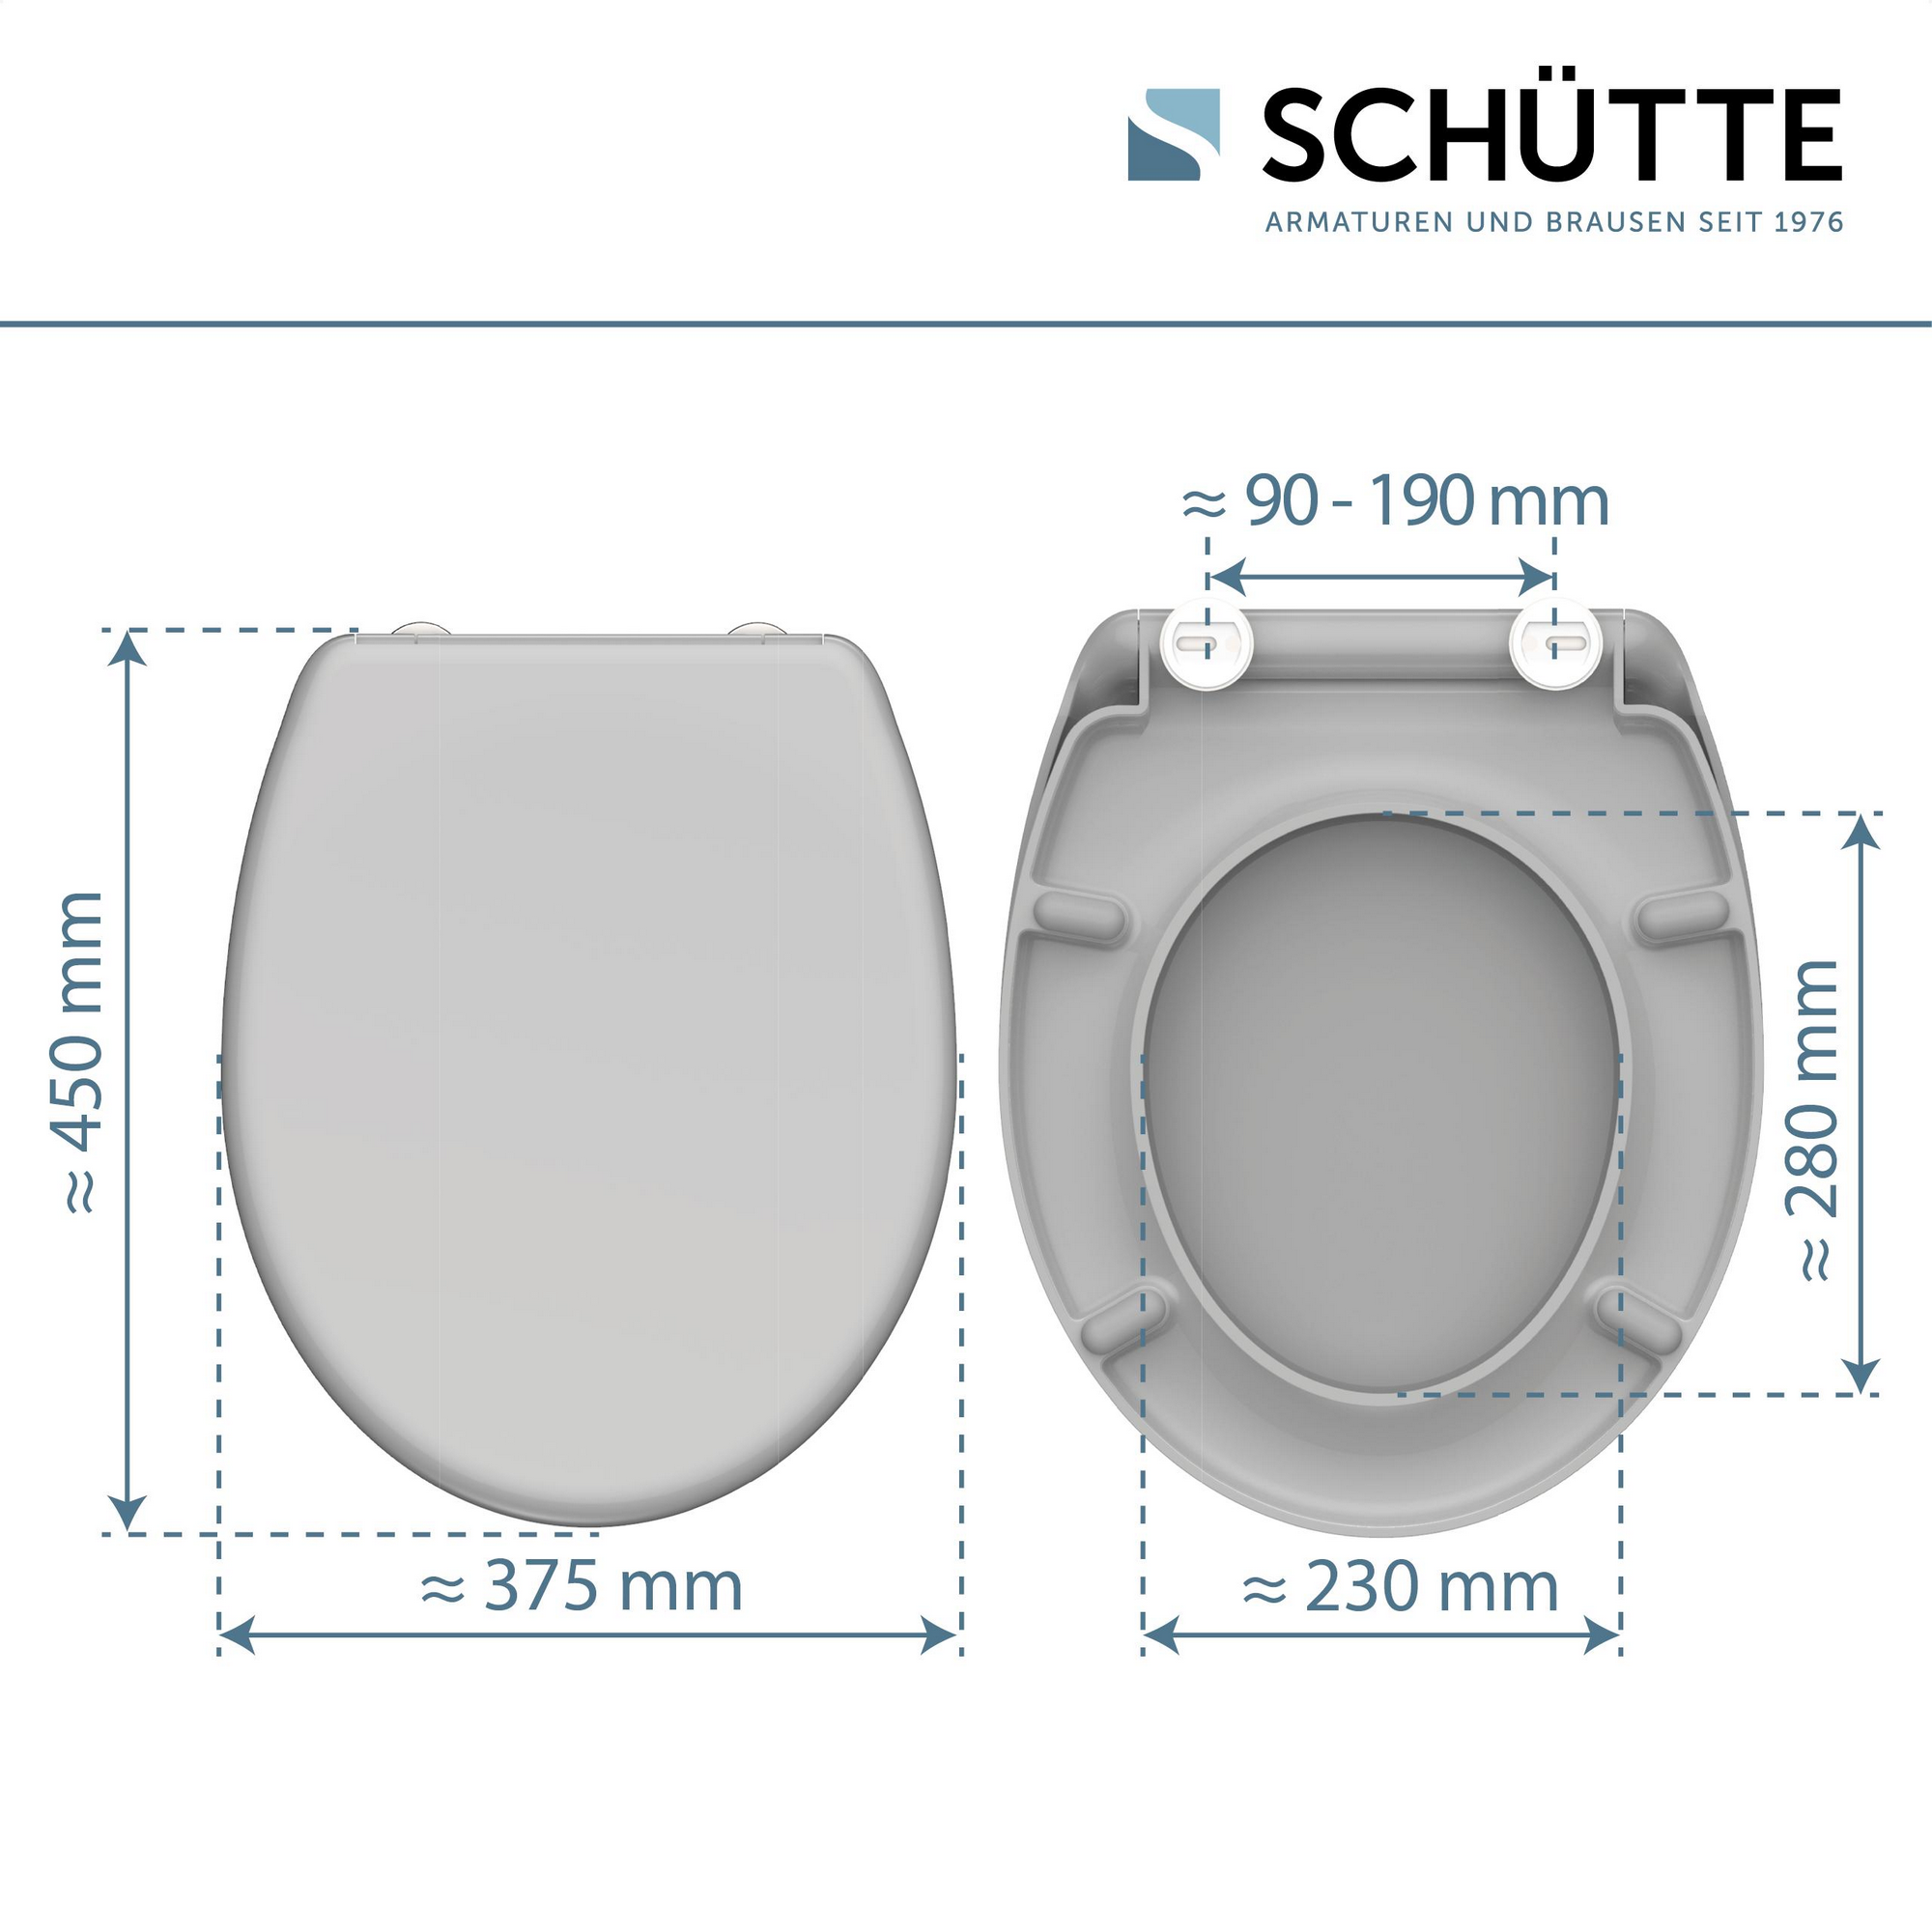 WC-Sitz mit Absenkautomatik grau 37,7 x 45 cm + product picture